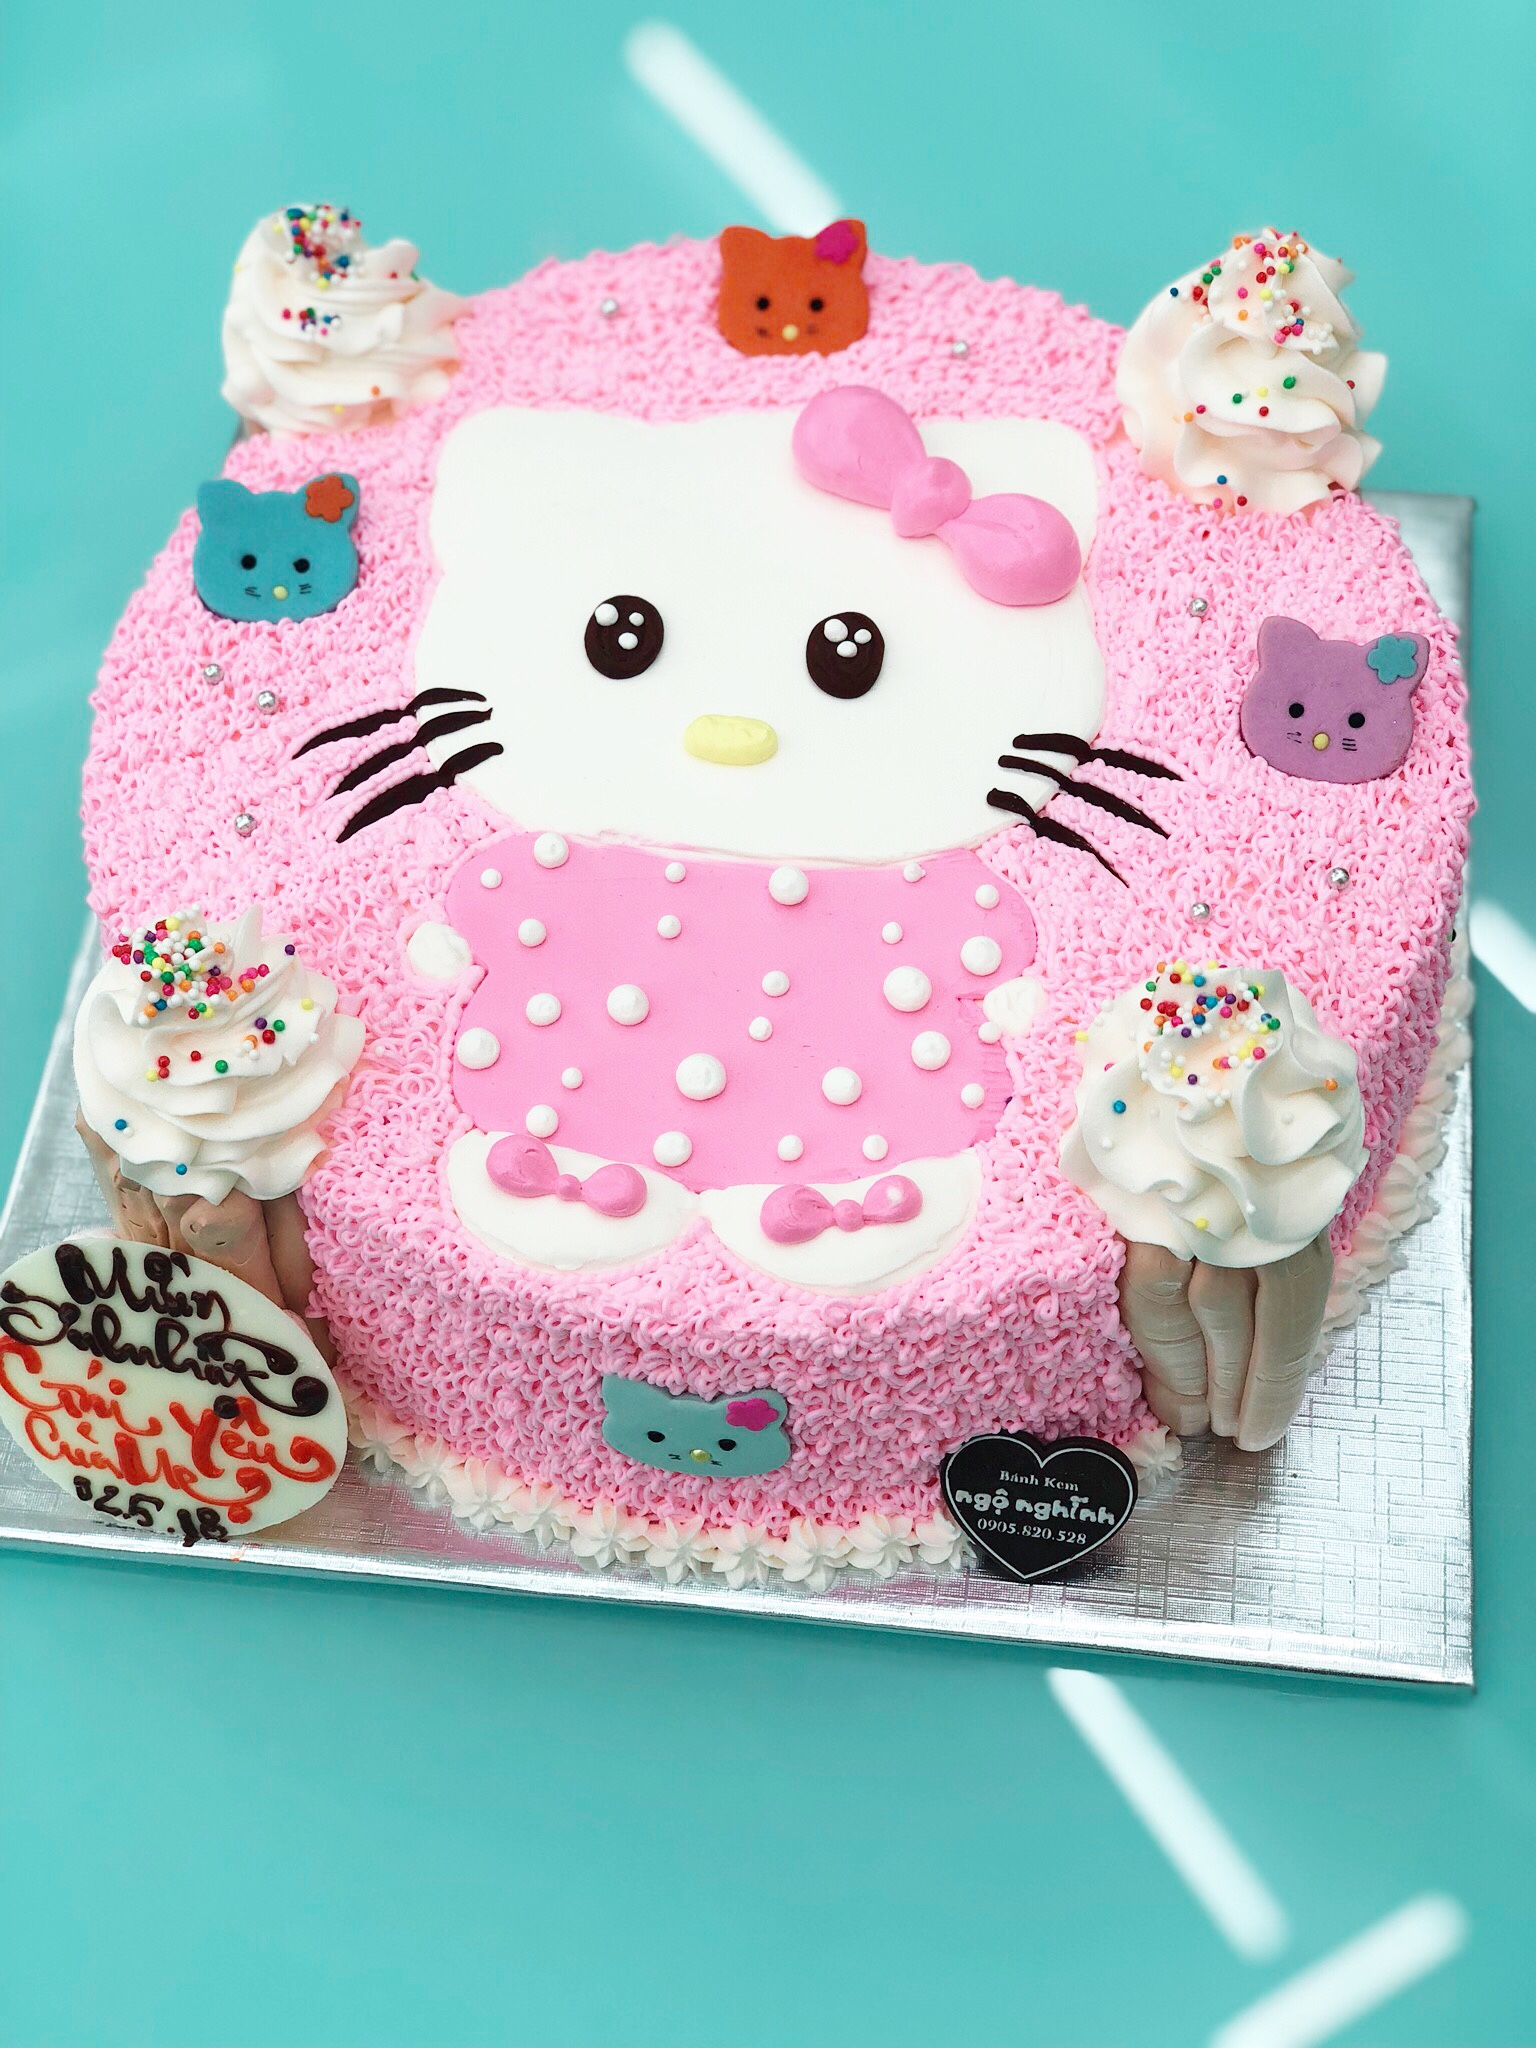 Bánh sinh nhật với hình mèo Hello Kitty màu hồng siêu dễ thương và đẹp mắt sẽ khiến cho bất kỳ ai nhìn vào cũng phải trầm trồ! Bánh được làm tinh tế với hương vị bông lan, kem sữa béo ngậy và phết lớp kem bơ, tạo cho bánh một vị ngọt ngào và hài hòa. Hãy xem và cảm nhận sự đặc biệt của bánh sinh nhật vẽ hình mèo Hello Kitty này.